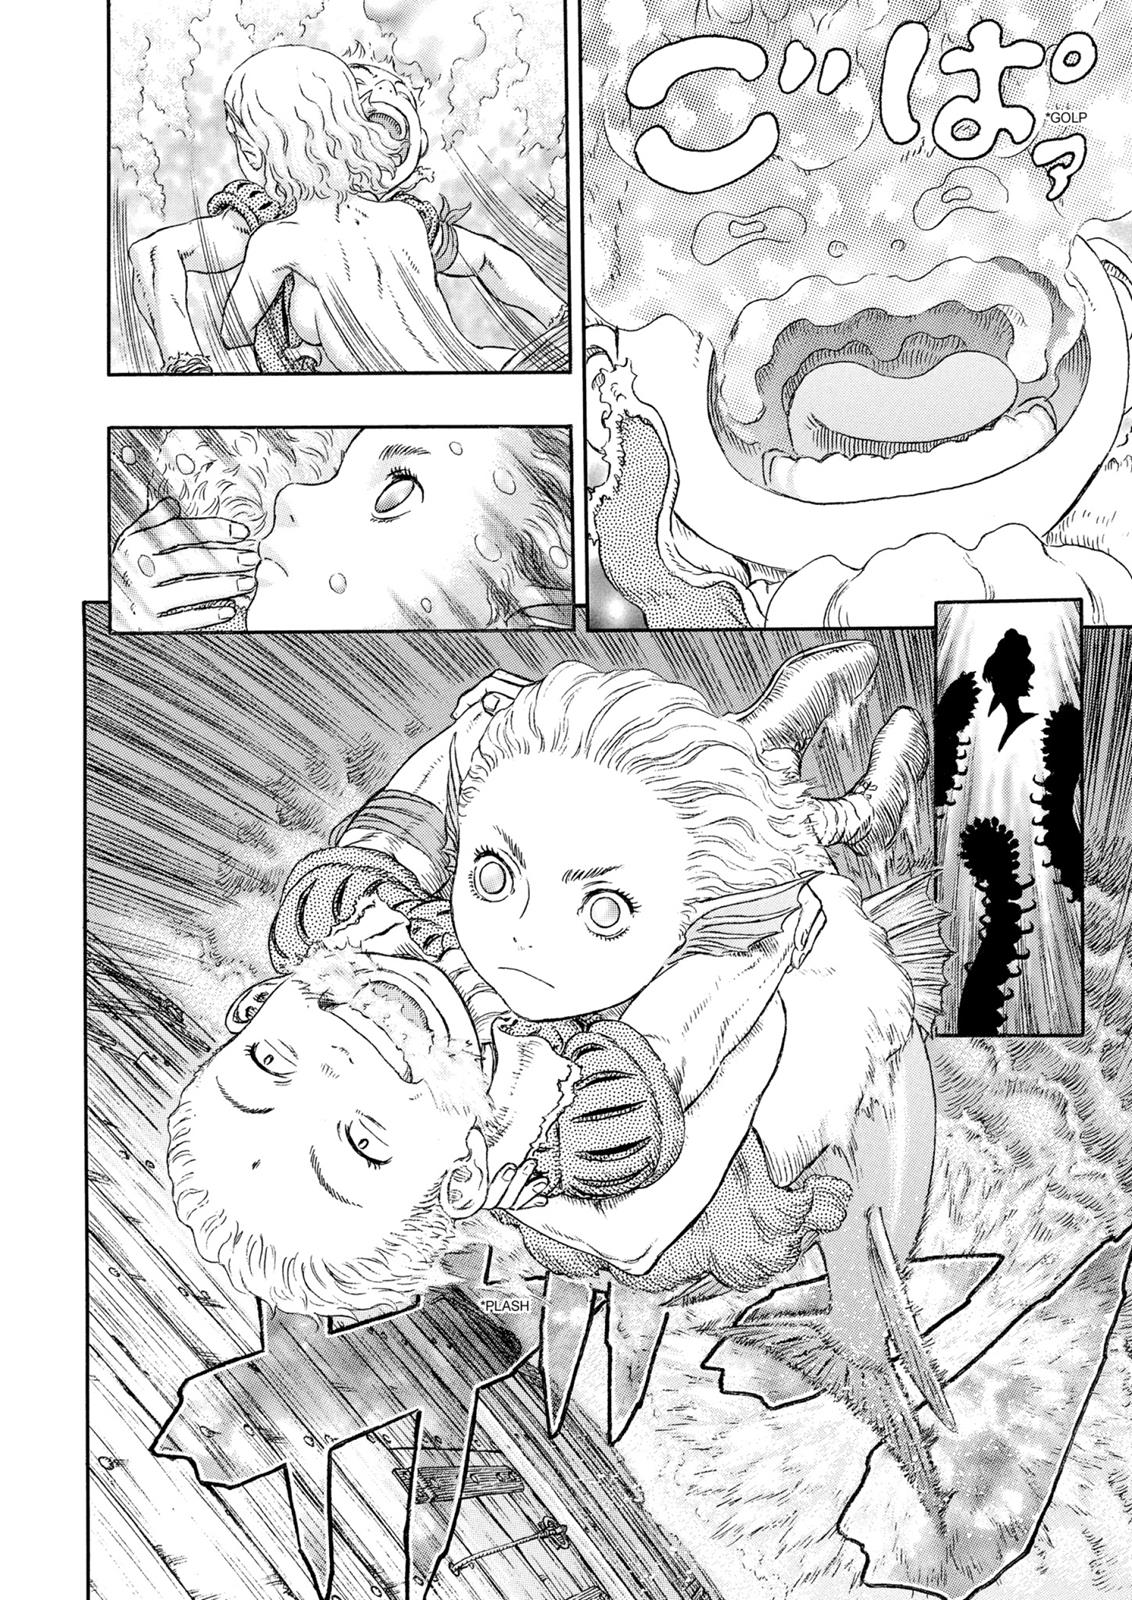 Berserk Manga Chapter 323 image 18